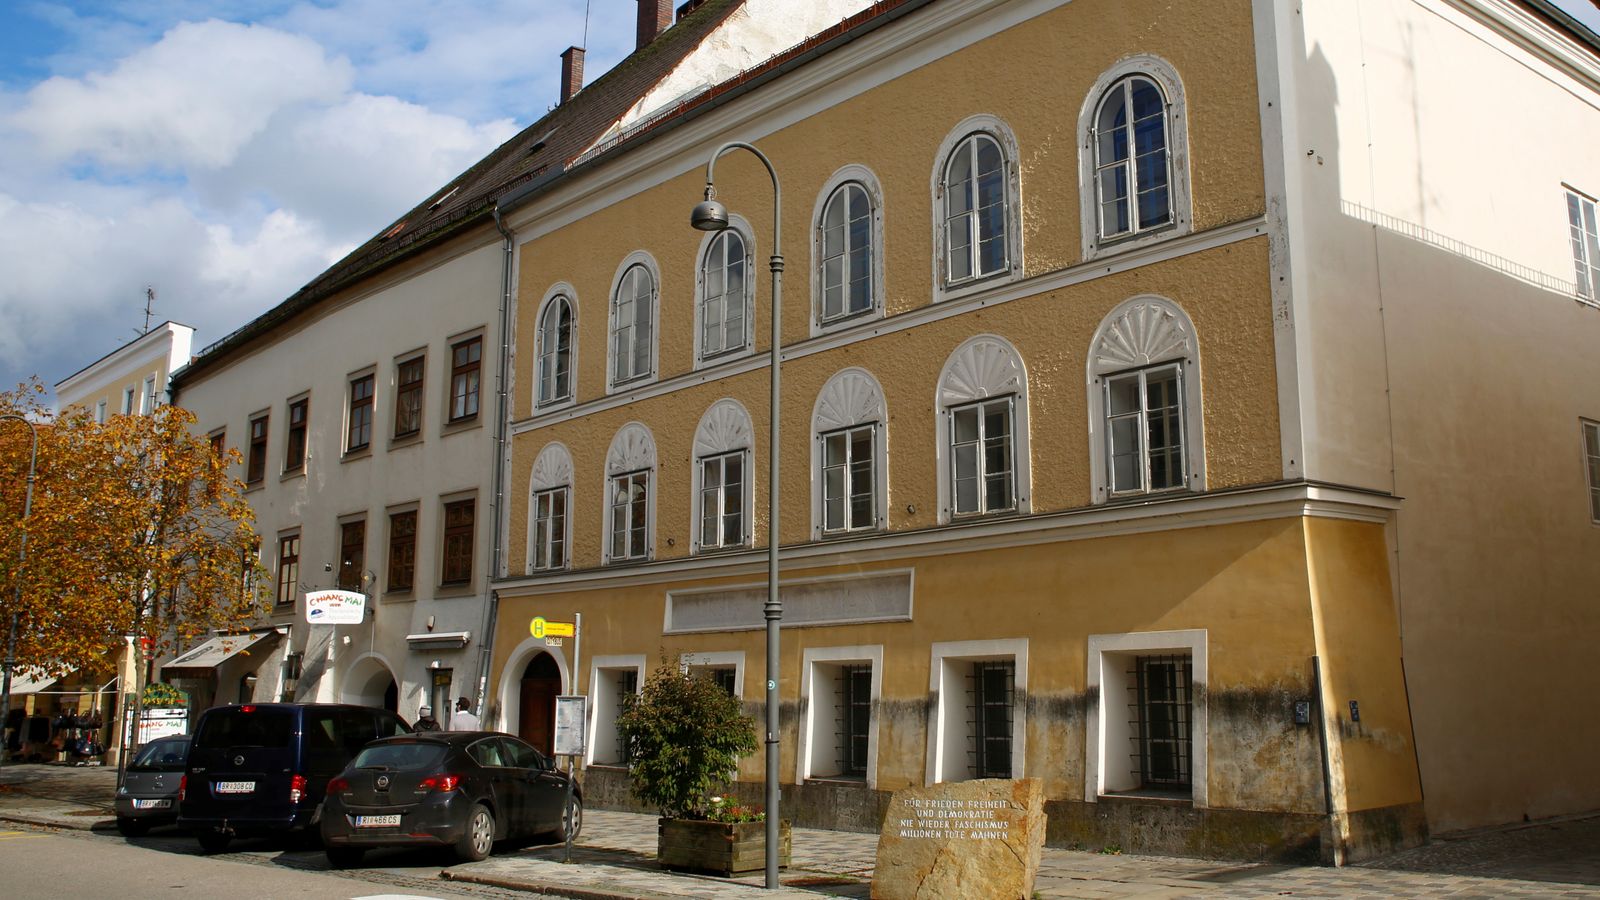 Maison où Hitler est né pour devenir un poste de police et un centre de formation aux droits de l’homme, selon l’Autriche |  Nouvelles du monde